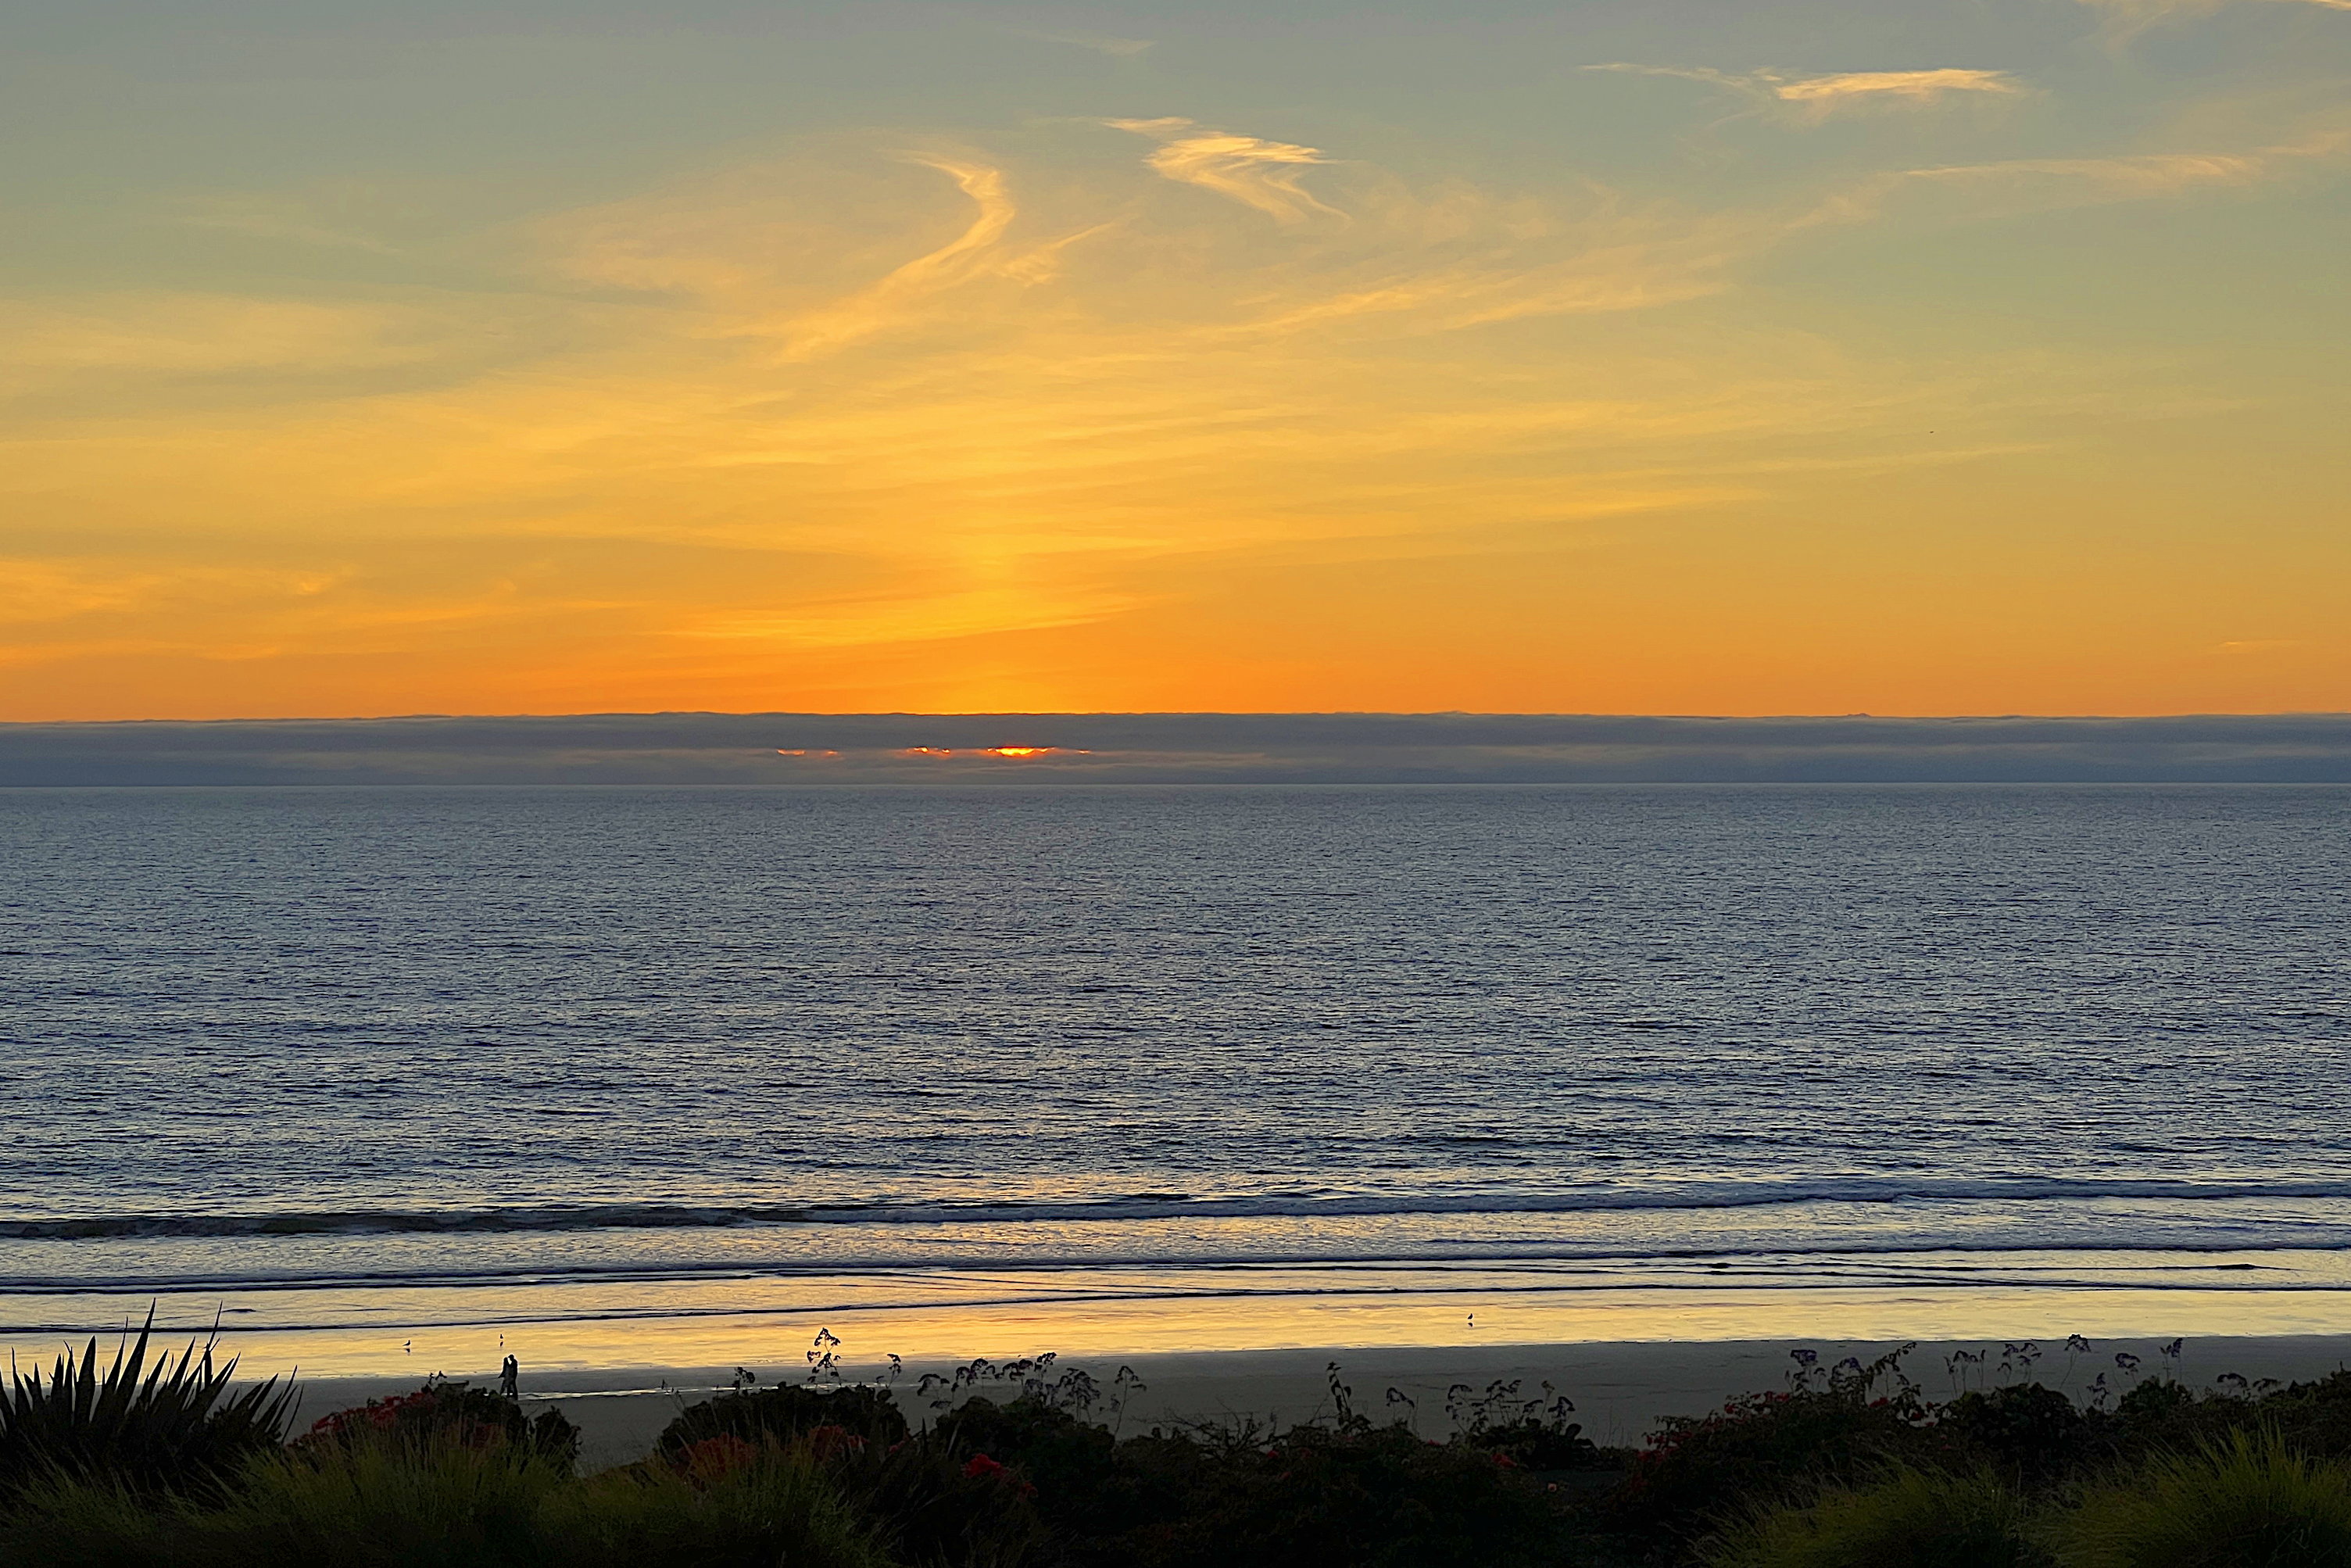 Wieder ein Sonnenuntergang über dem Pazifik. Die Sonne ist unter die Wolkenbank am Horizont gerutscht. Sie scheint aber ein klein wenig unter der Wolkenbank hervor. Der Himmel ist orange und die wenigen hohen Wolken werden von unten beleuchtet.